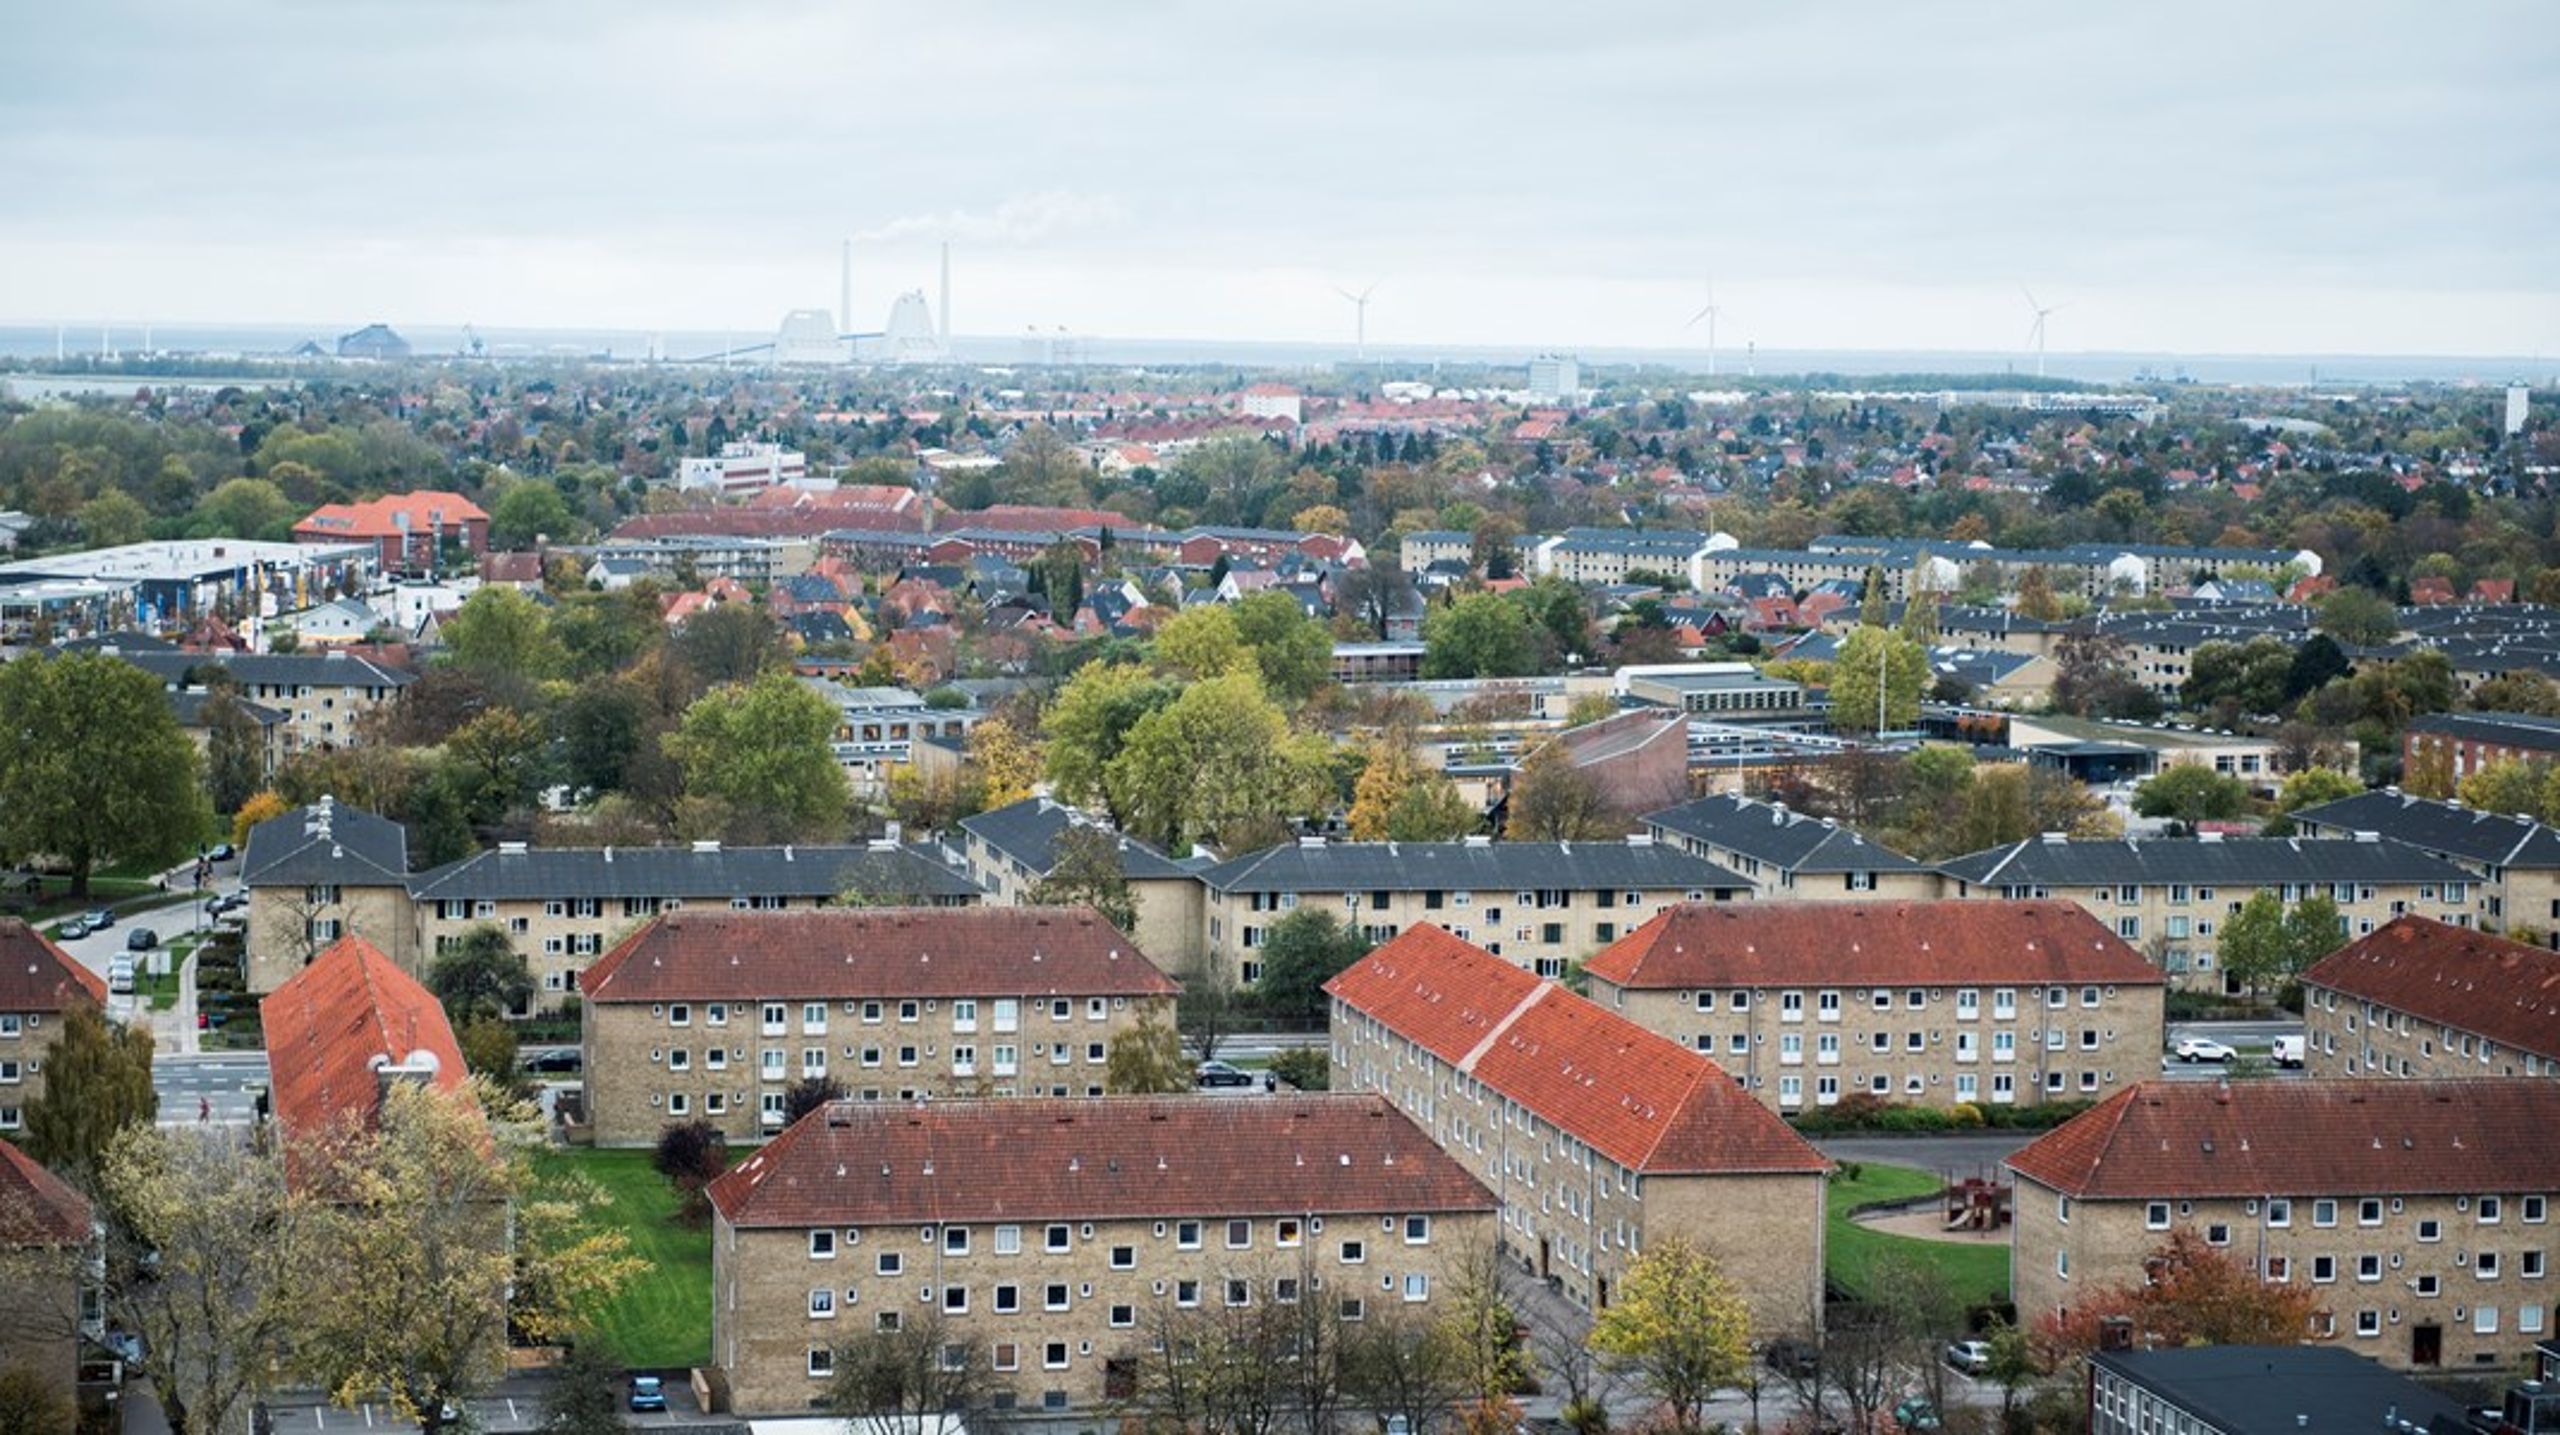 "Huslejen i almene boliger opført i København er naturligvis højere i det nye end i det ældre almene byggeri, men det er stadig langt under, hvad andre boligformer kan byde på," skriver formand og næstformand for BL i Hovedstaden.